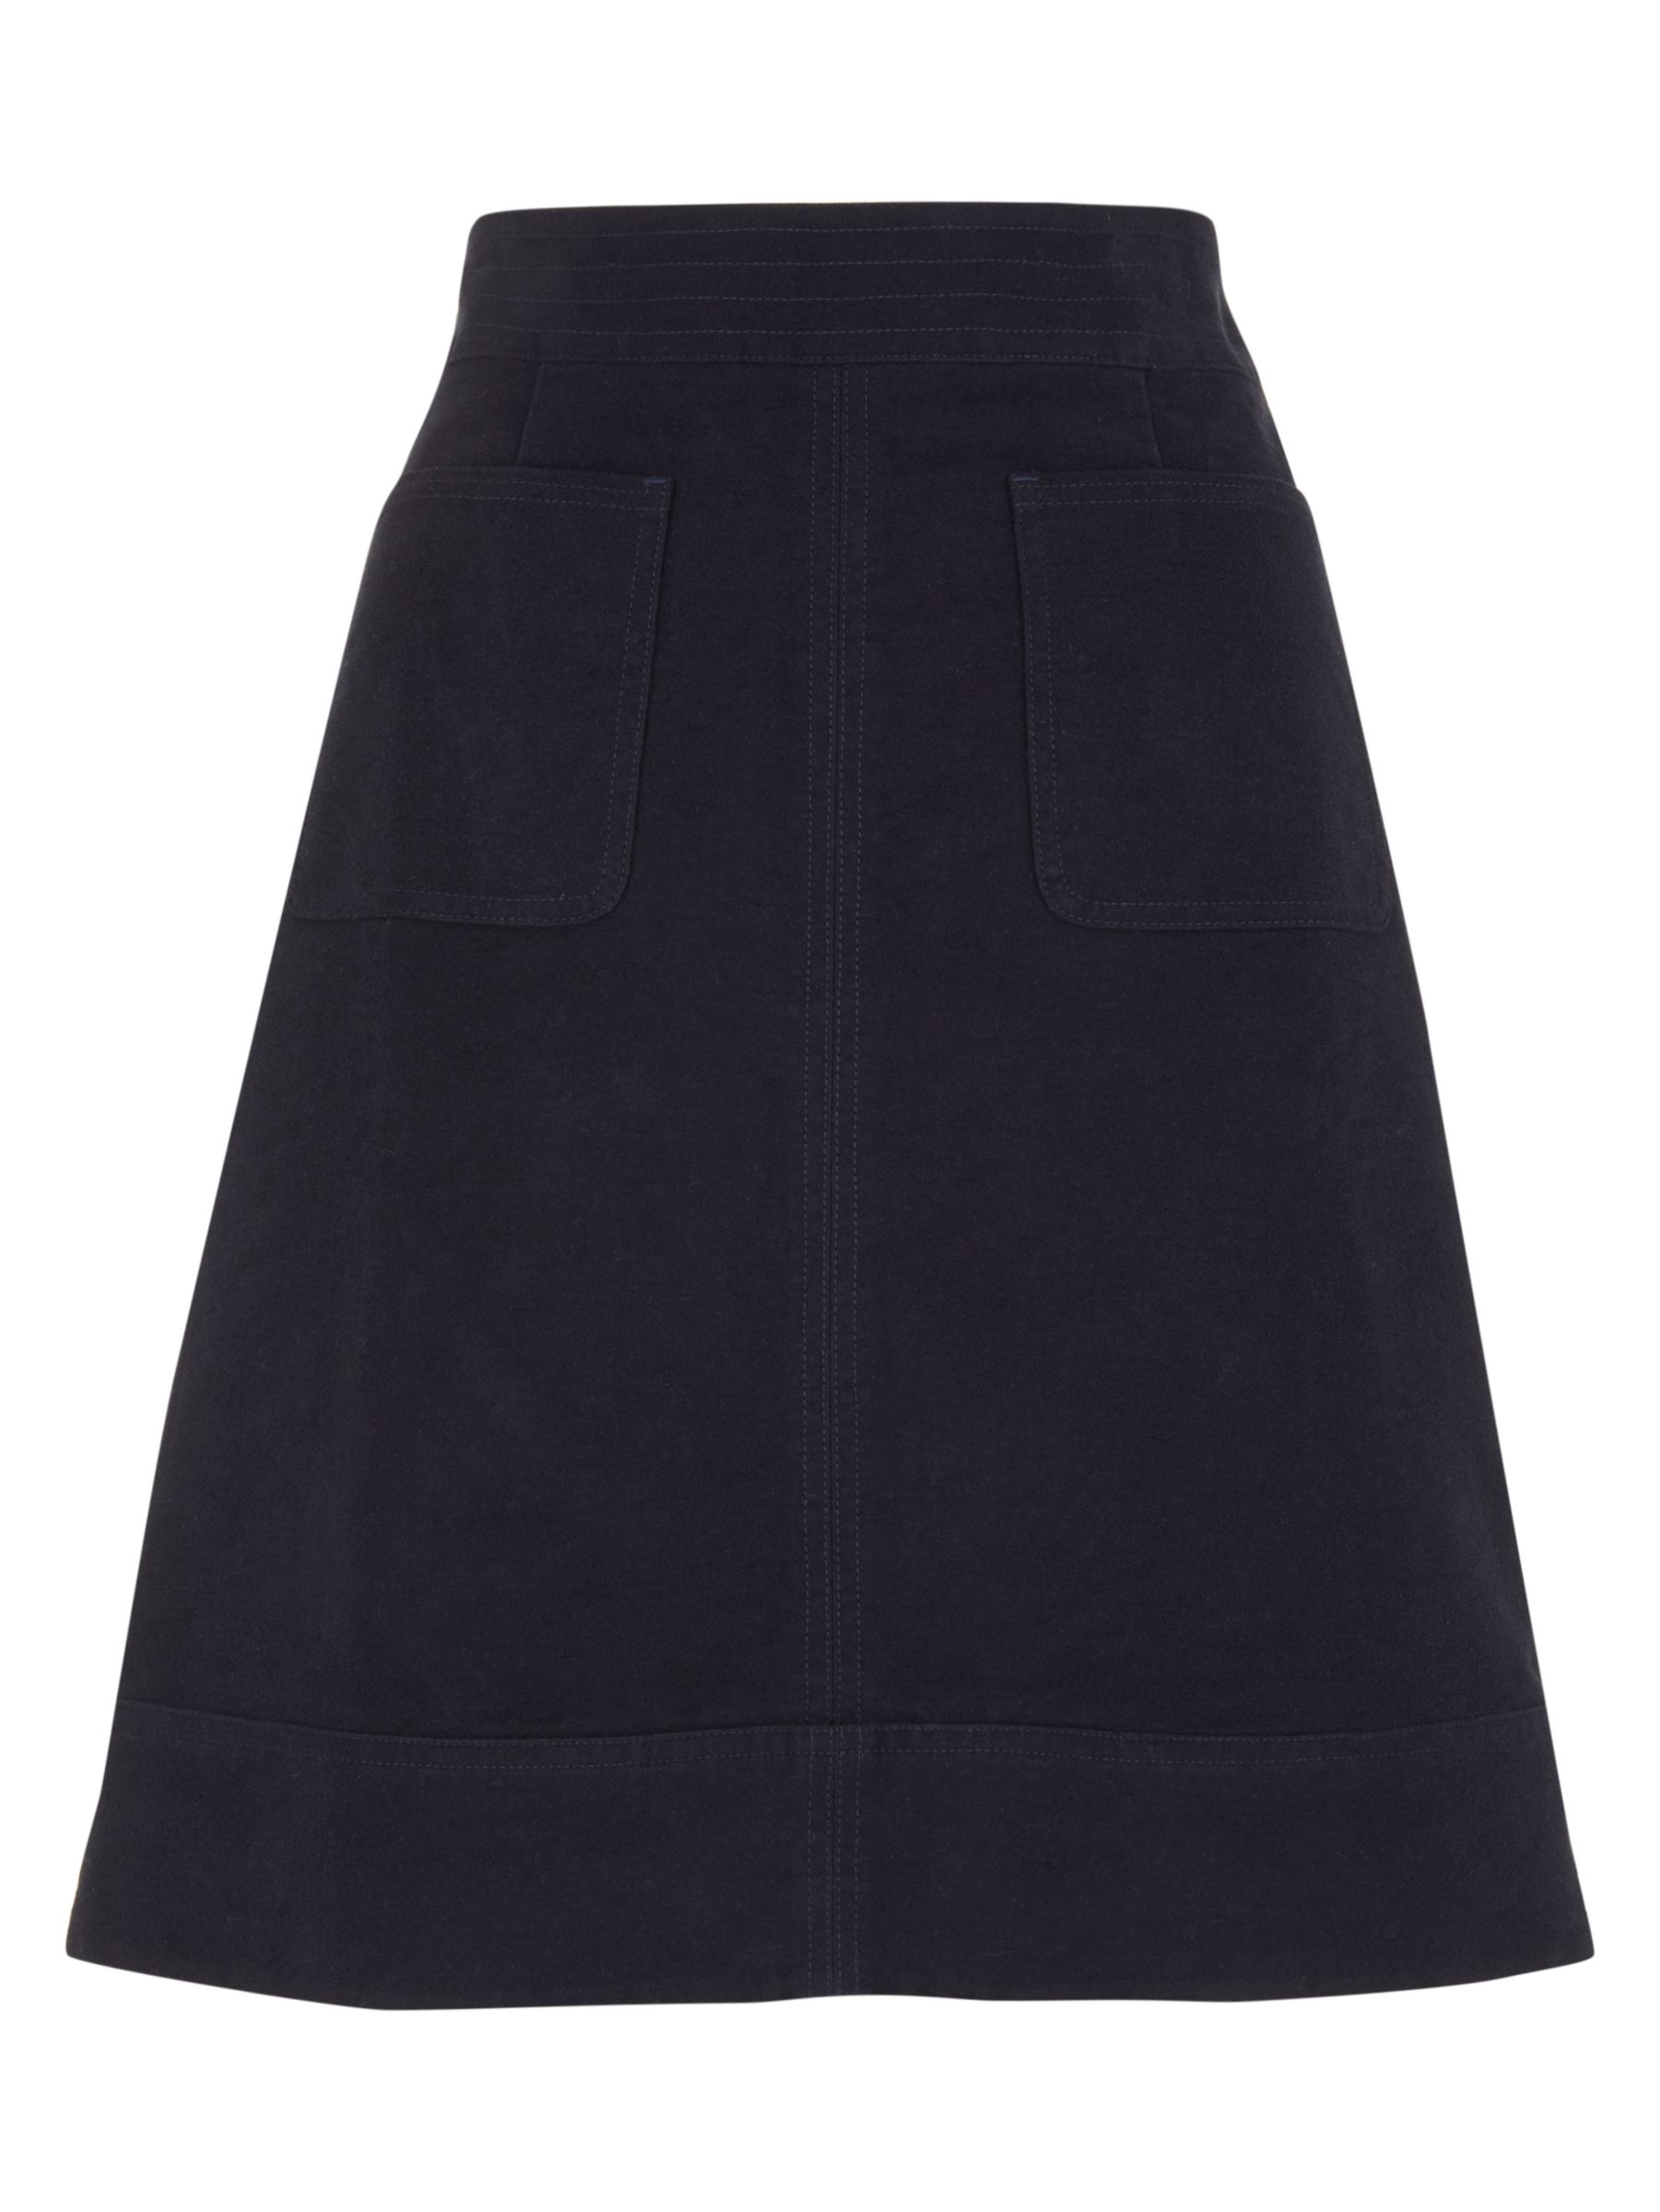 Boden Dorchester Skirt, Navy